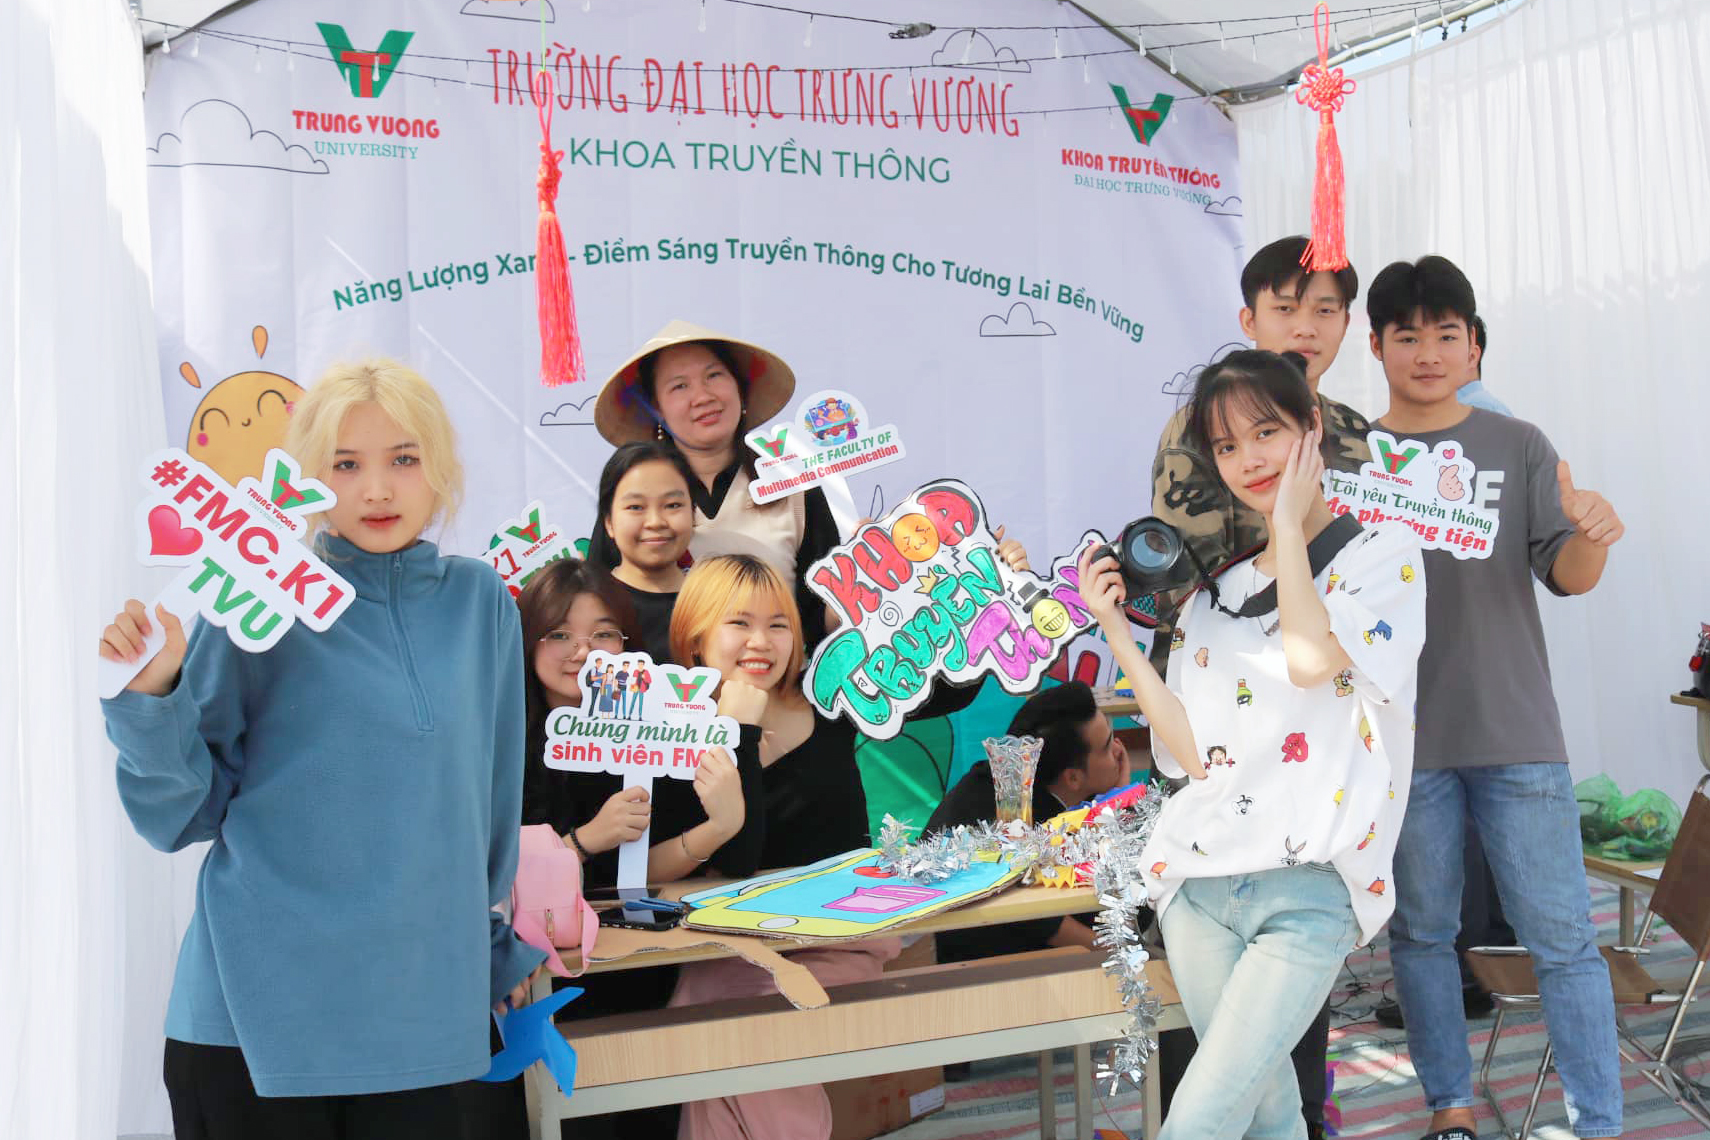 Sinh viên Truyền thông tạo nhiều dấu ấn trong cuộc thi thiết kế trại do trường Đại học Trưng Vương tổ chức cùng chuỗi hoạt động kỷ niệm Ngày nhà giáo Việt Nam 20/11